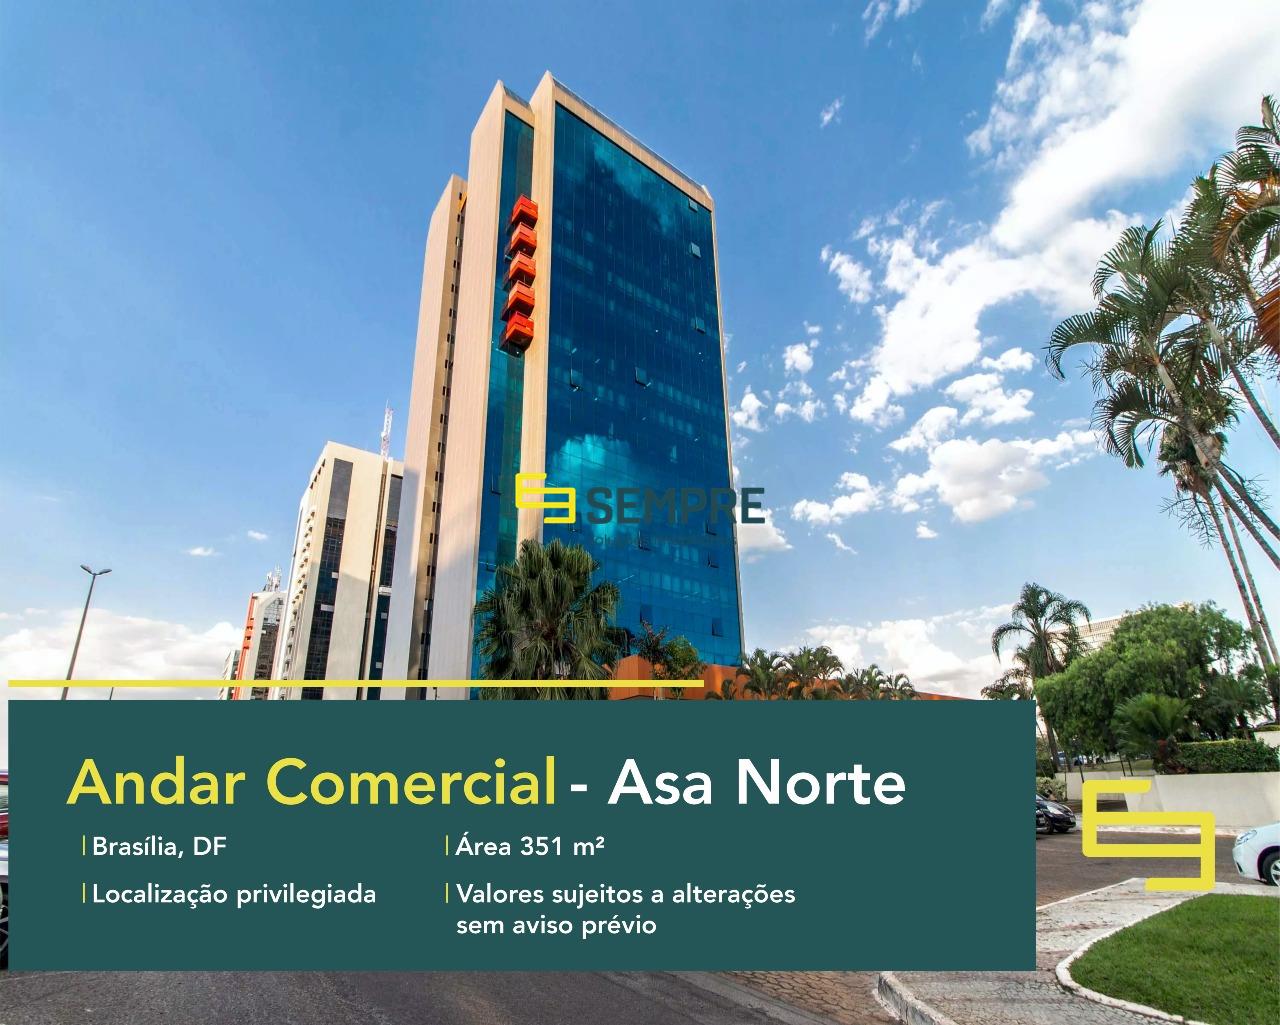 Andar corporativo para alugar em Brasília - Edifício Number One, excelente localização. O estabelecimento comercial conta com área de 351 m².